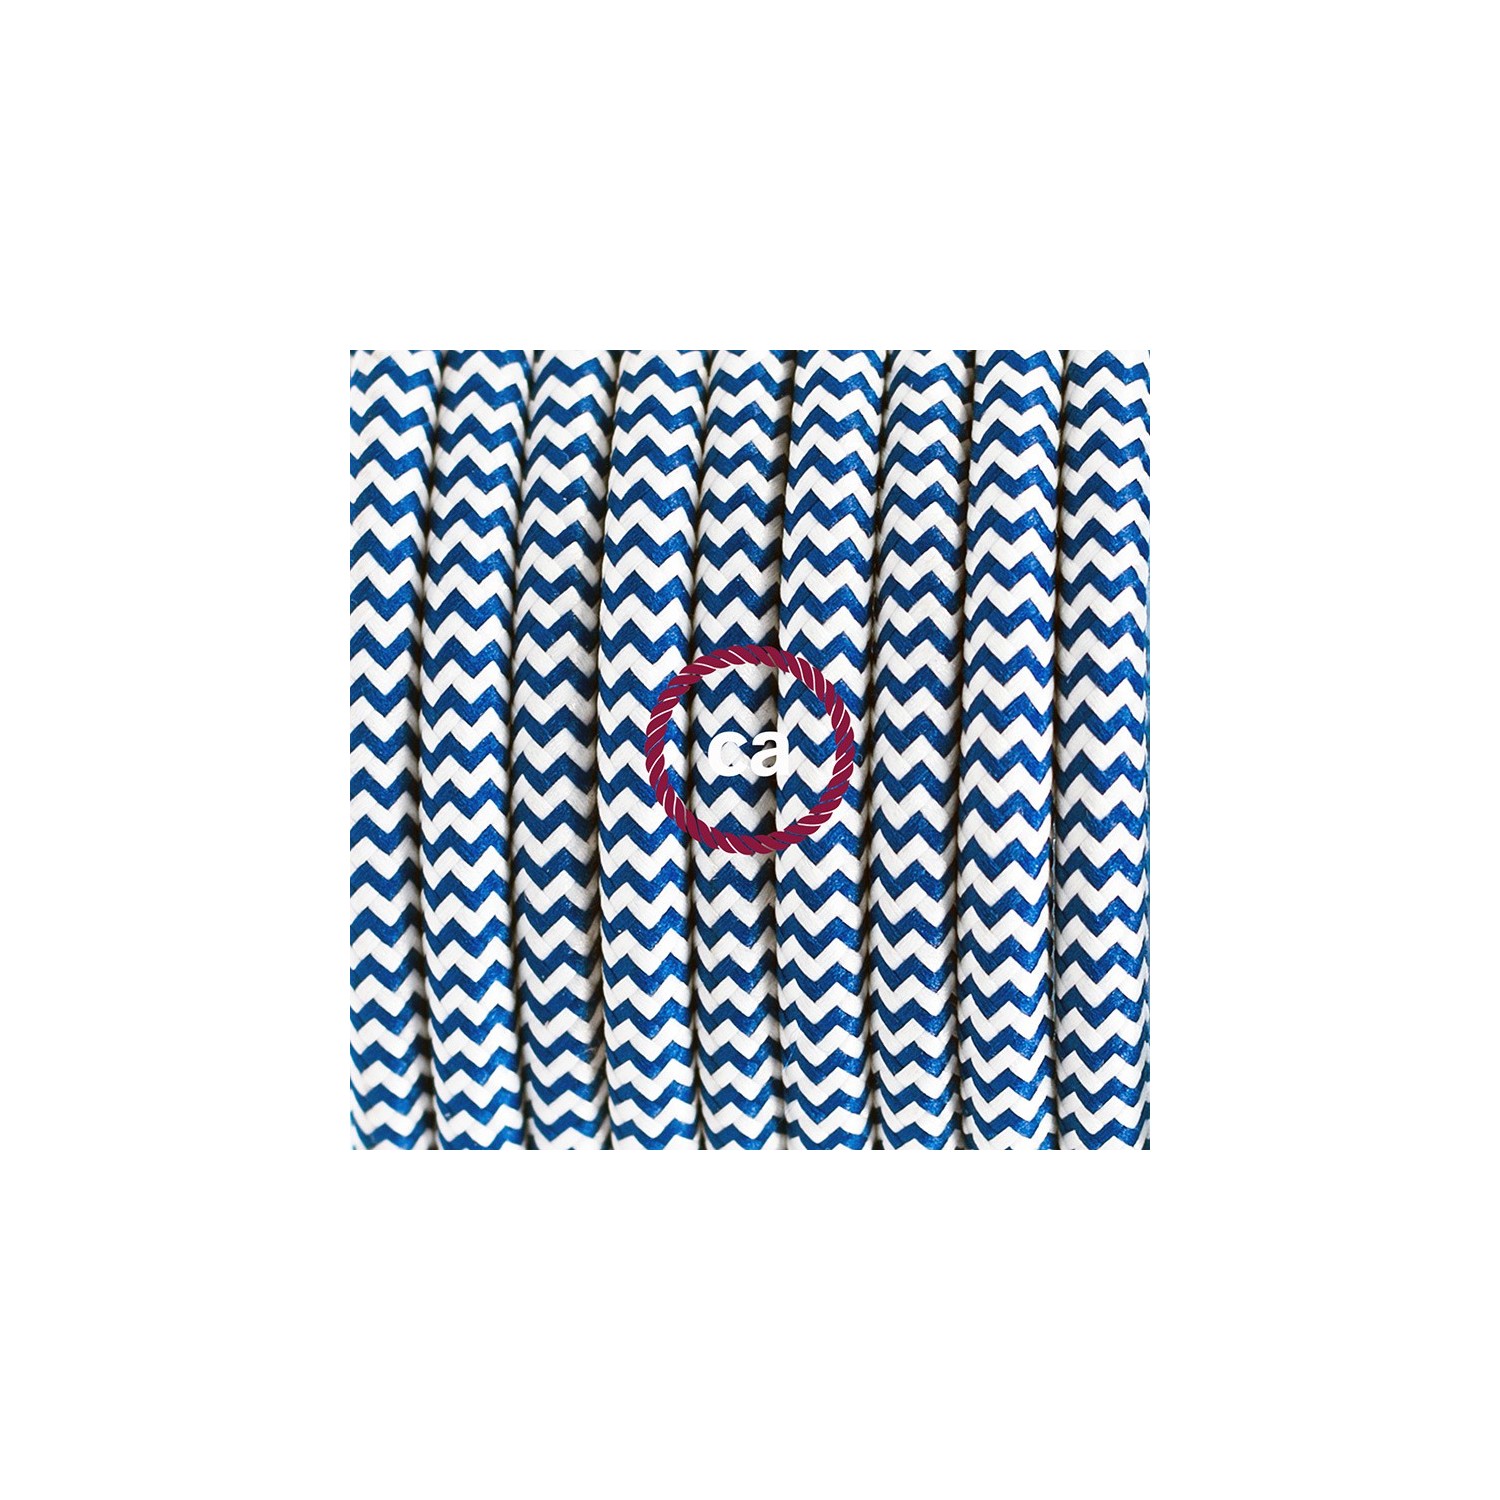 Ronde flexibele textielkabel van viscose met schakelaar en stekker. RZ12 - zigzag wit/blauw 1,80 m.